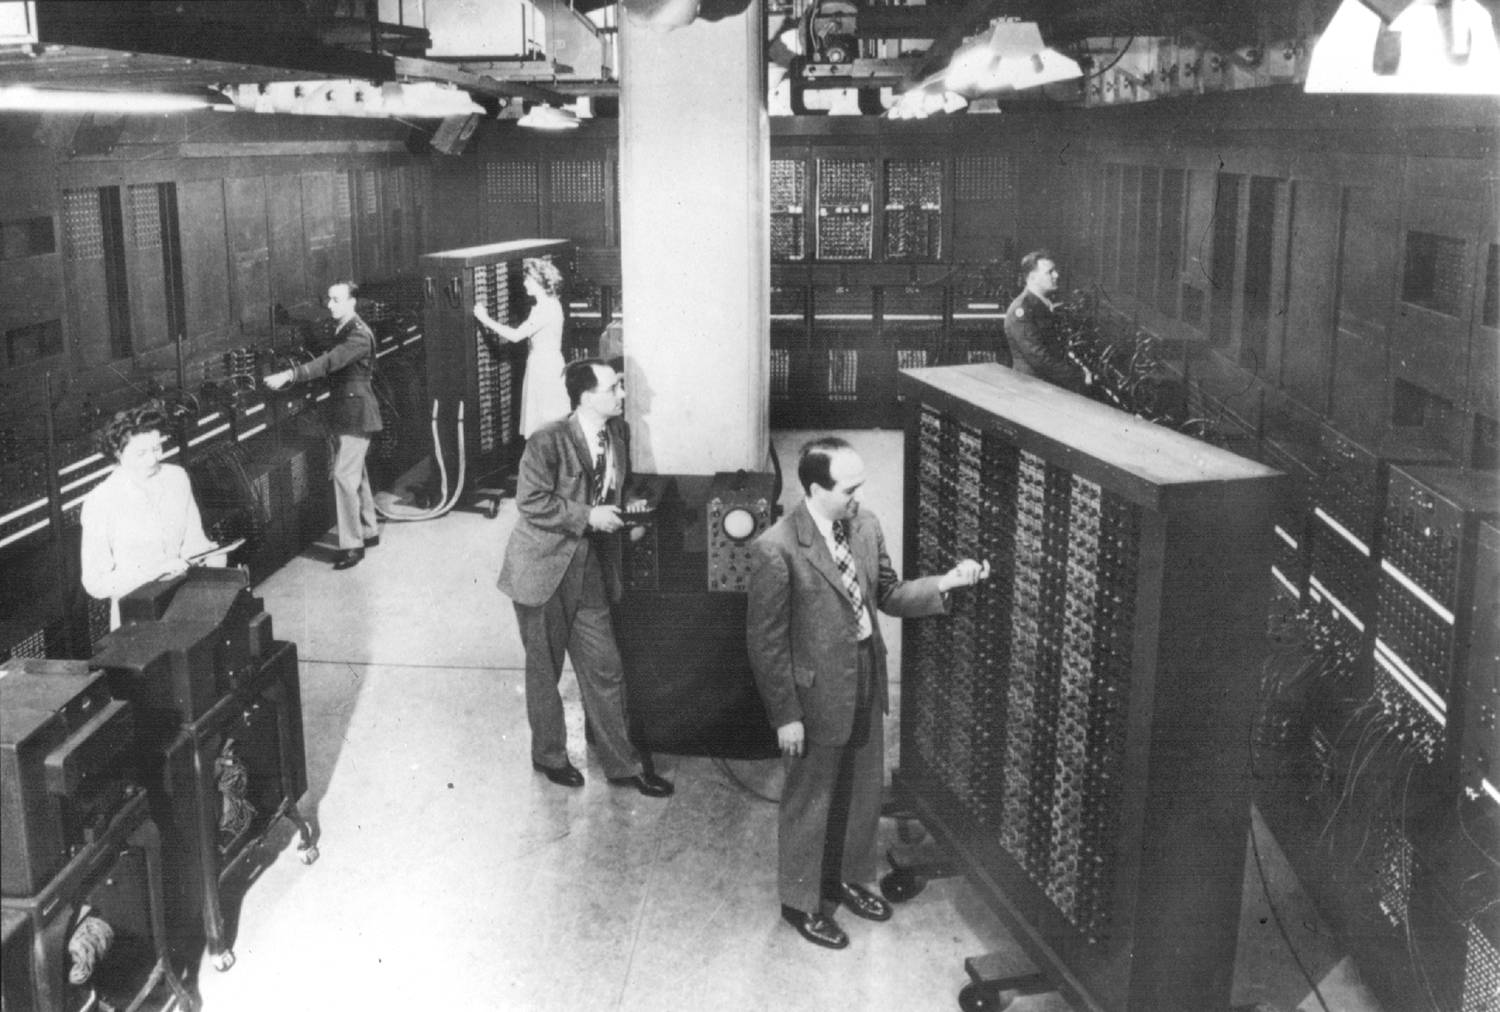 تصویر ENIAC اولین و بزرگترین کامپیوتر جهان - از وبلاگ شخصی حامد پروینی ، حامد پروینی، دانشمندان معروف، زندگی دانشمندان، وبلاگ شخصی حامد پروینی، زندگینامه بزرگان، مخترعان جهان، Hamed، Hamed Parvini، مهندسی فناوری اطلاعات، وبلاگ رسمی حامد پروینی، حامد، پروینی، حامد پروینی، قشلاقی، حامد پروینی قشلاقی، وبلاگ رسمی حامد پروینی، فناوری، IT، Hamed، Hamed Parvini،  Hamed Parvini Gheshlaghi، Parvini، مهندس حامد پروینی، رشته مهندسی تکنولوژی فناوری اطلاعات و ارتباطات